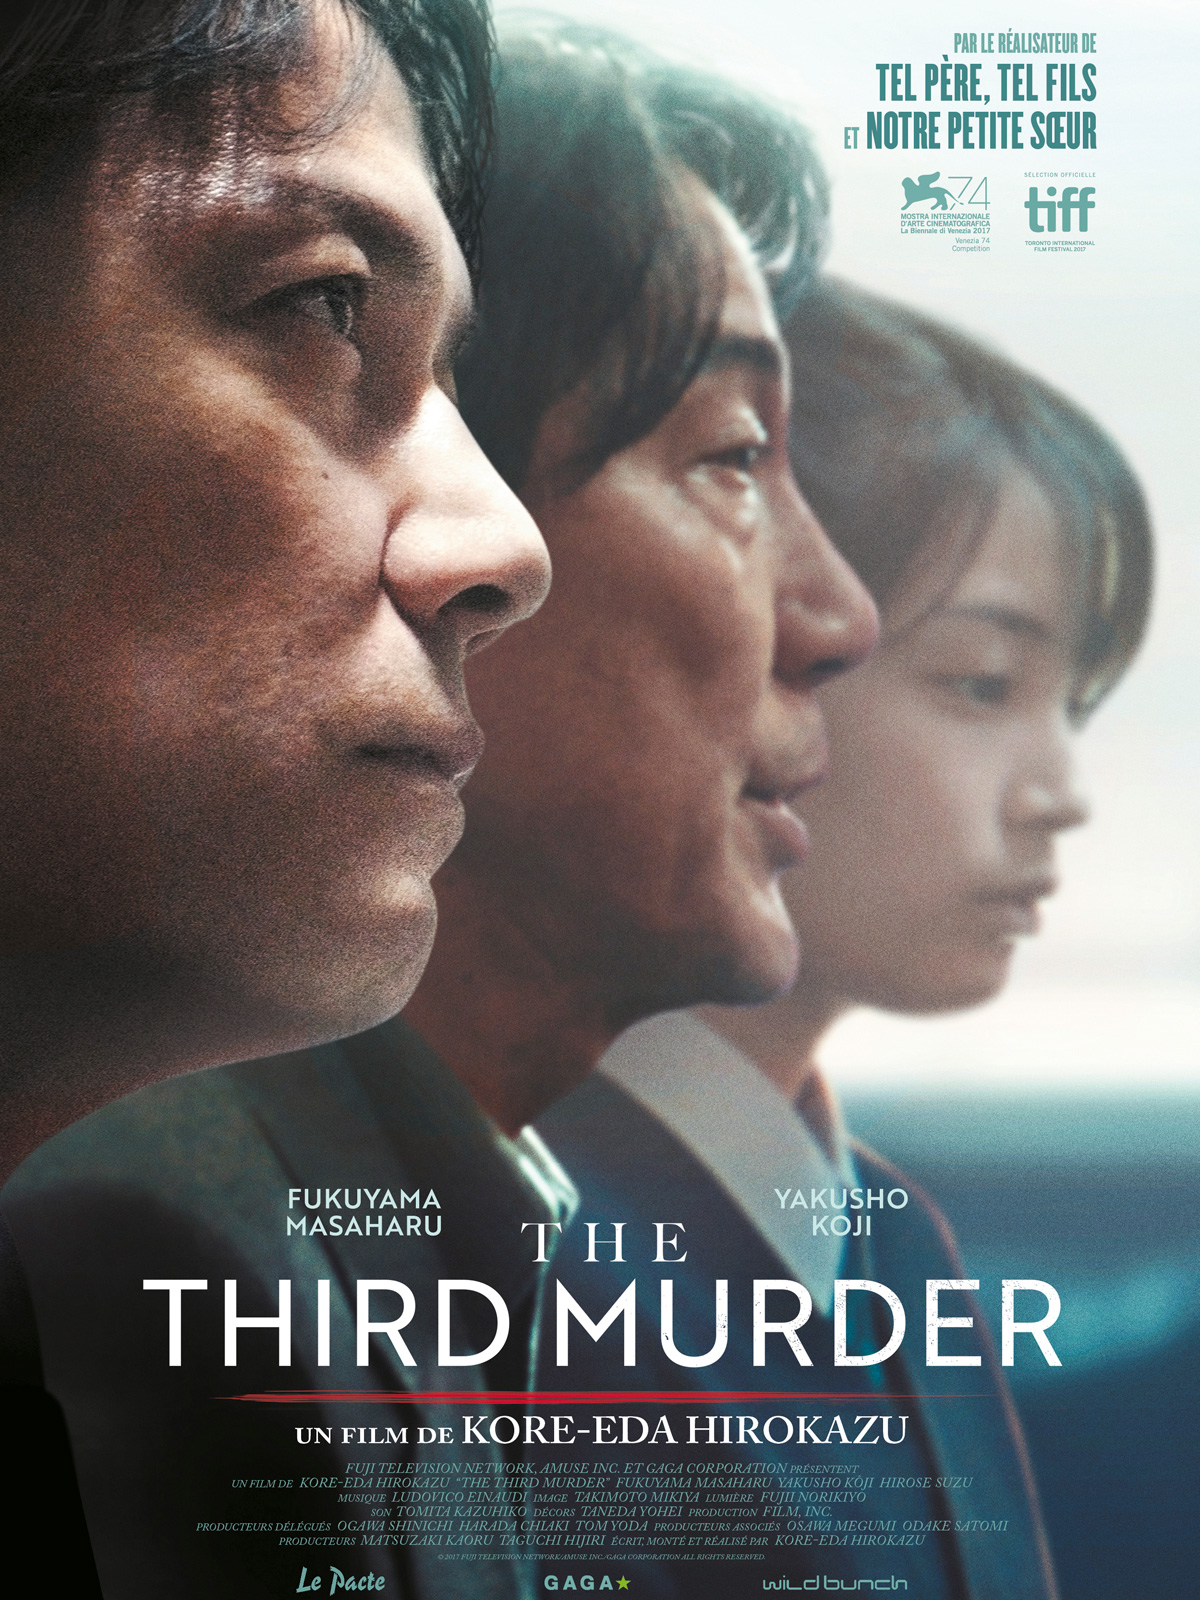 The Third Murder de Kore-Eda Hirokazu sort en salles.